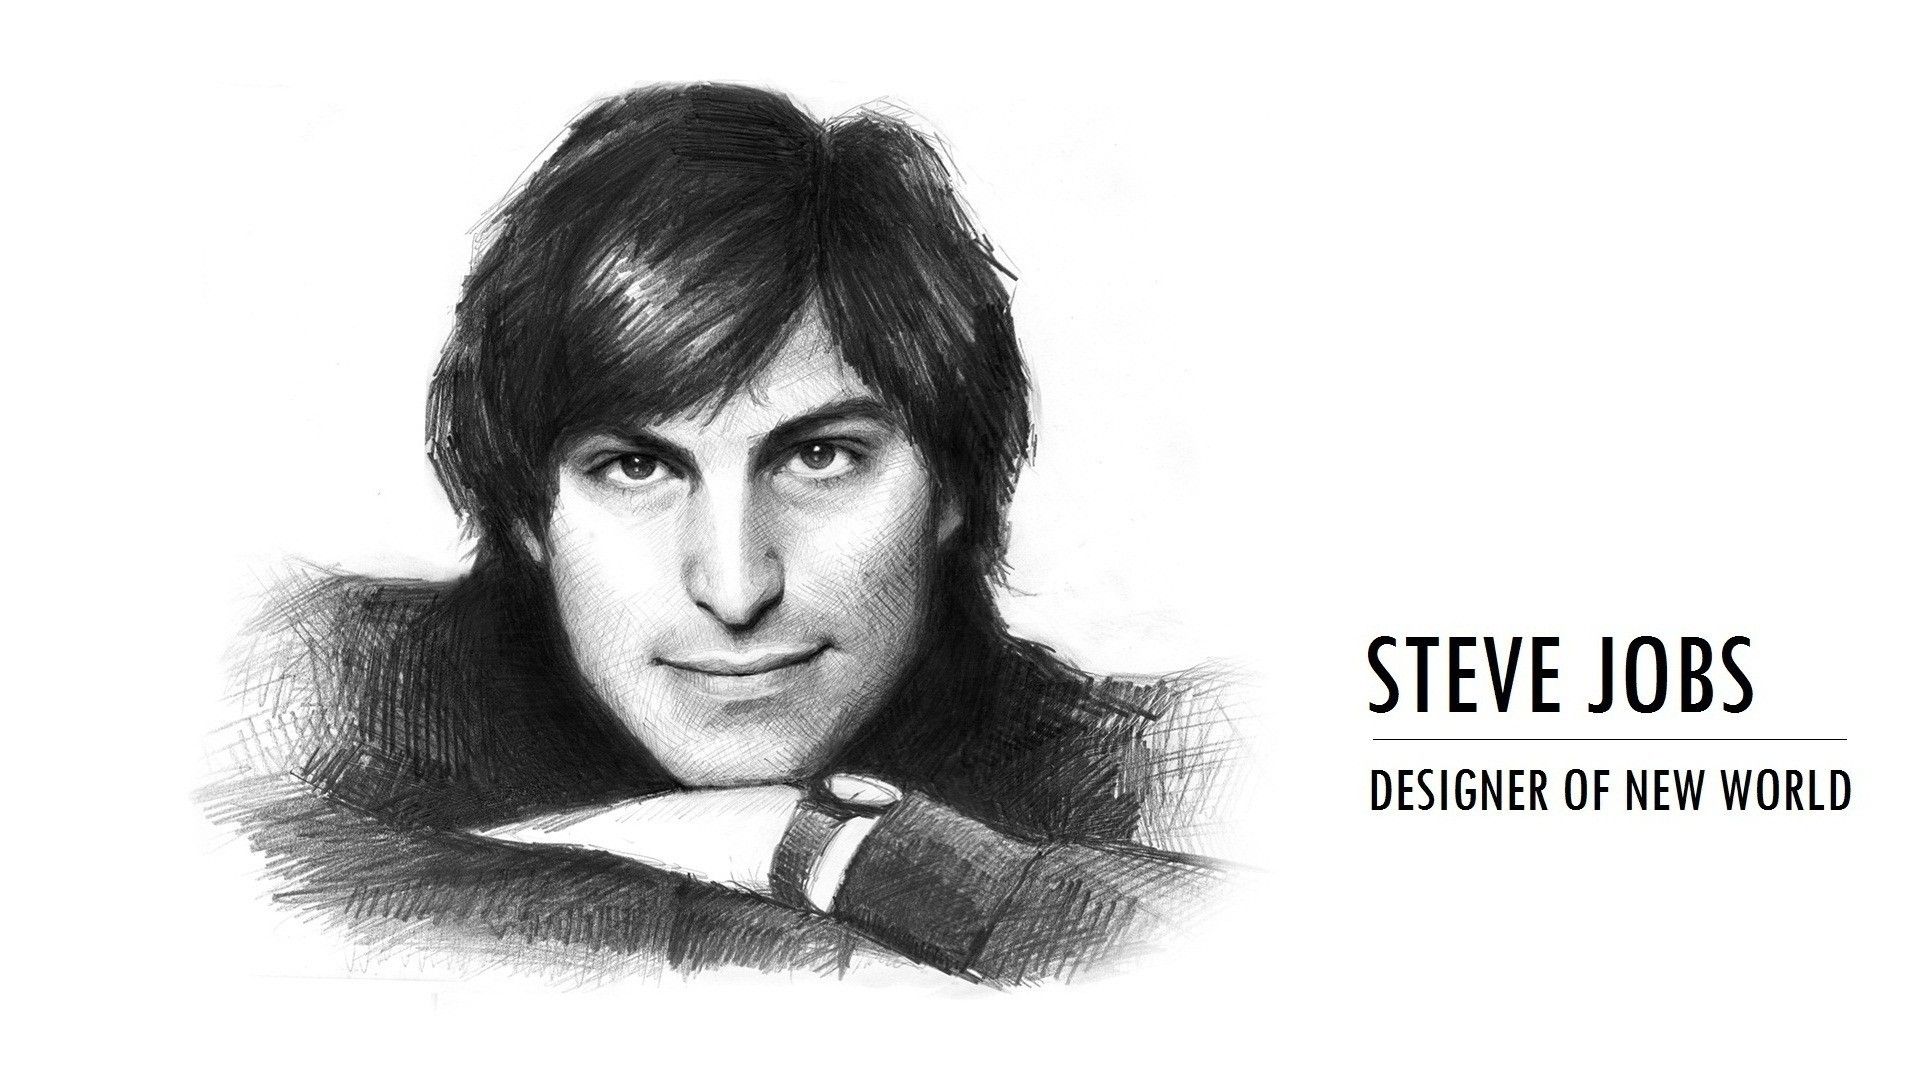 Steve Jobs Wallpaper: Image